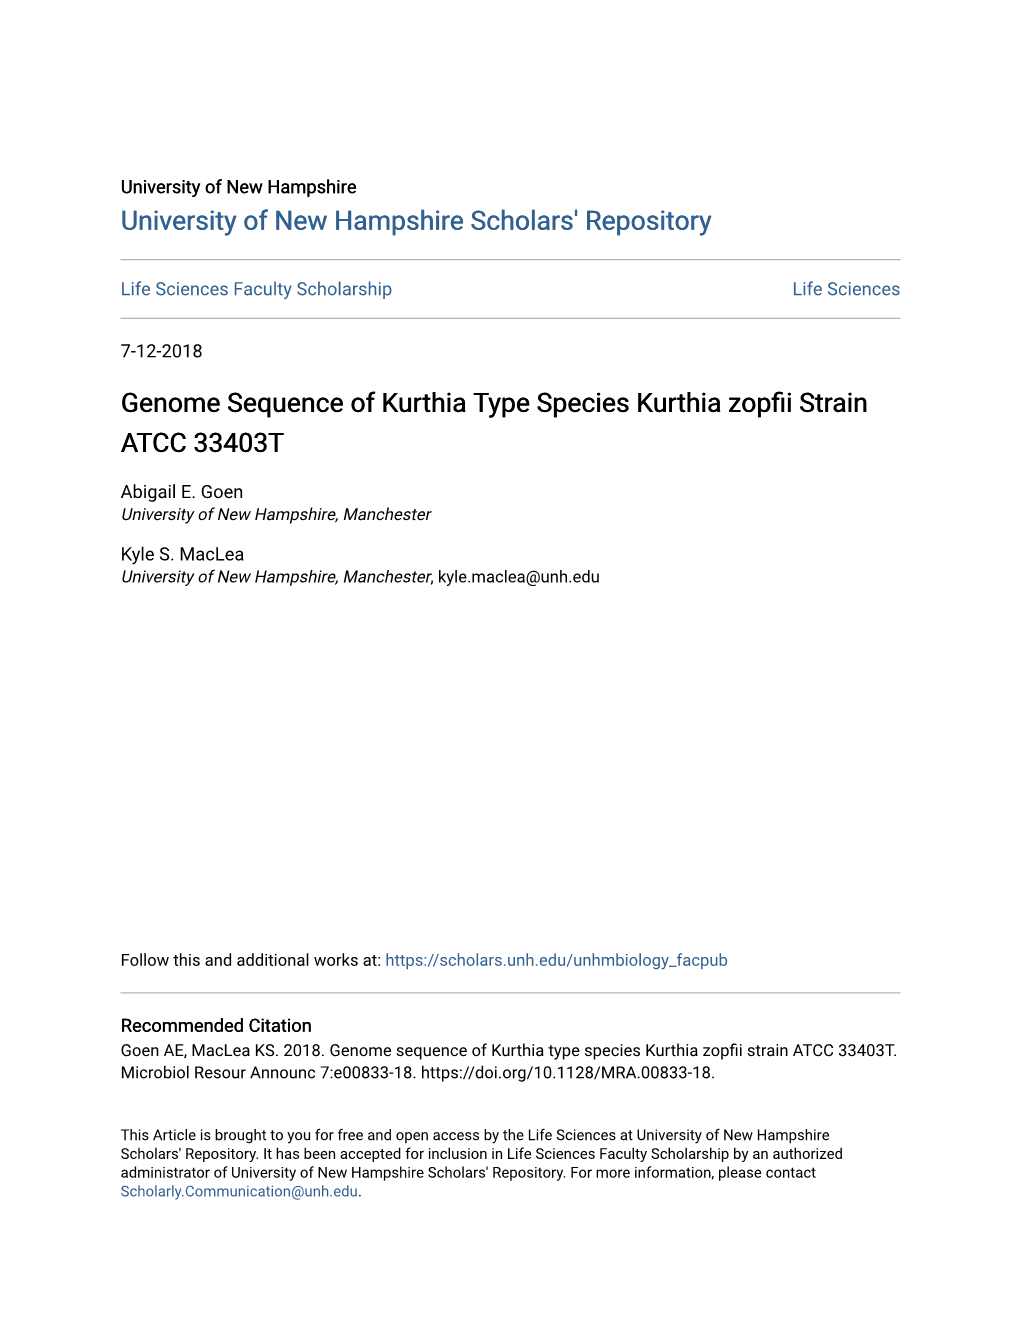 Genome Sequence of Kurthia Type Species Kurthia Zopfii Strain ATCC 33403T